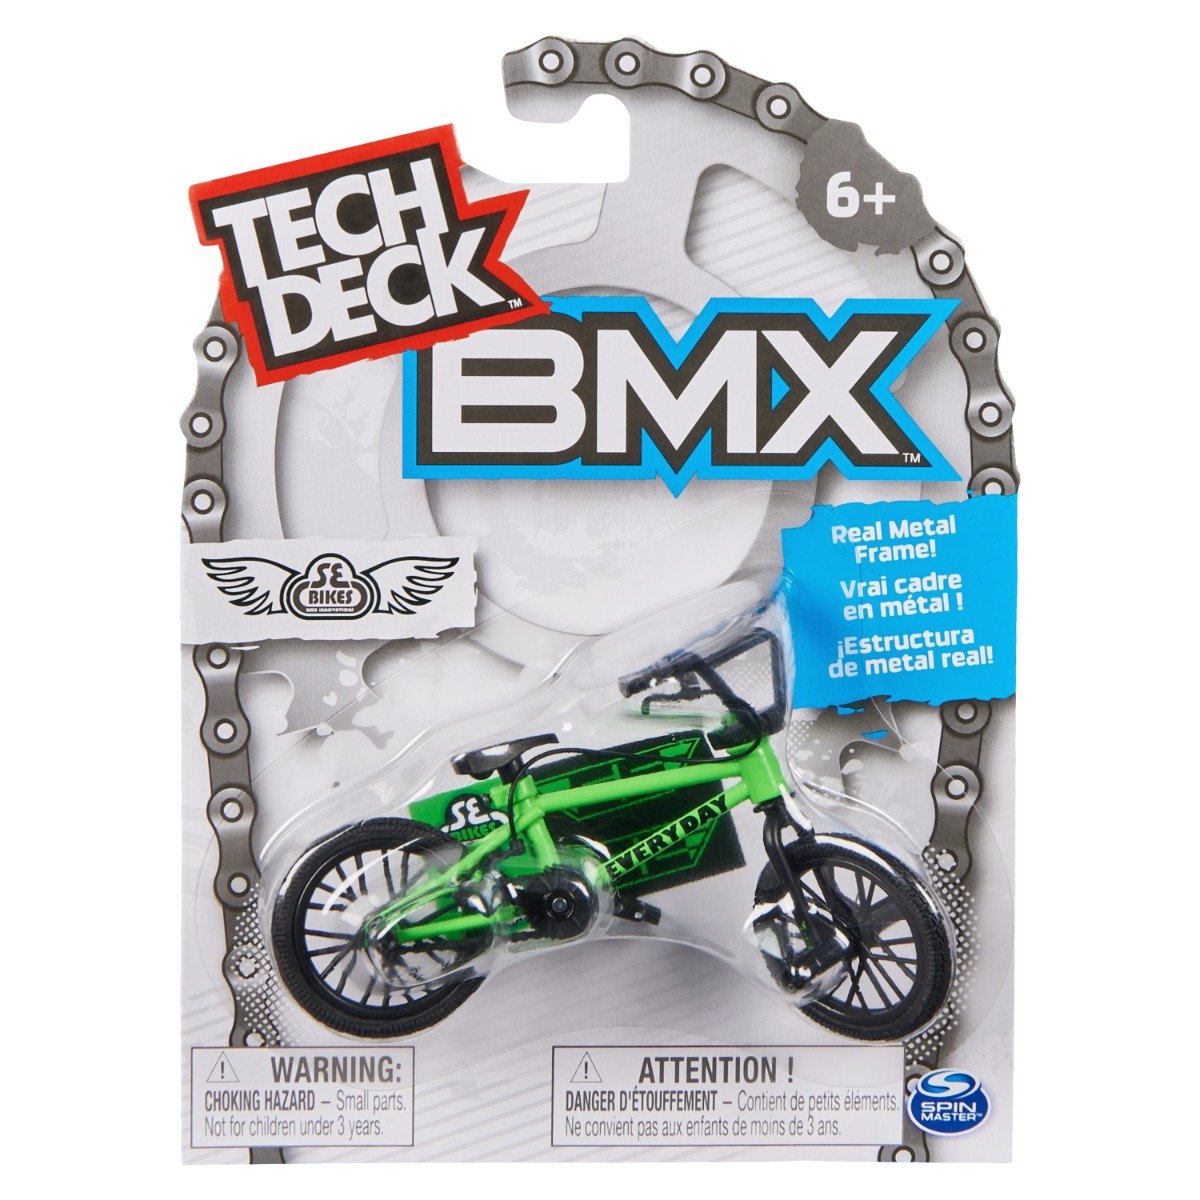 Mini BMX bike, Tech Deck, SE Bikes, 20141004